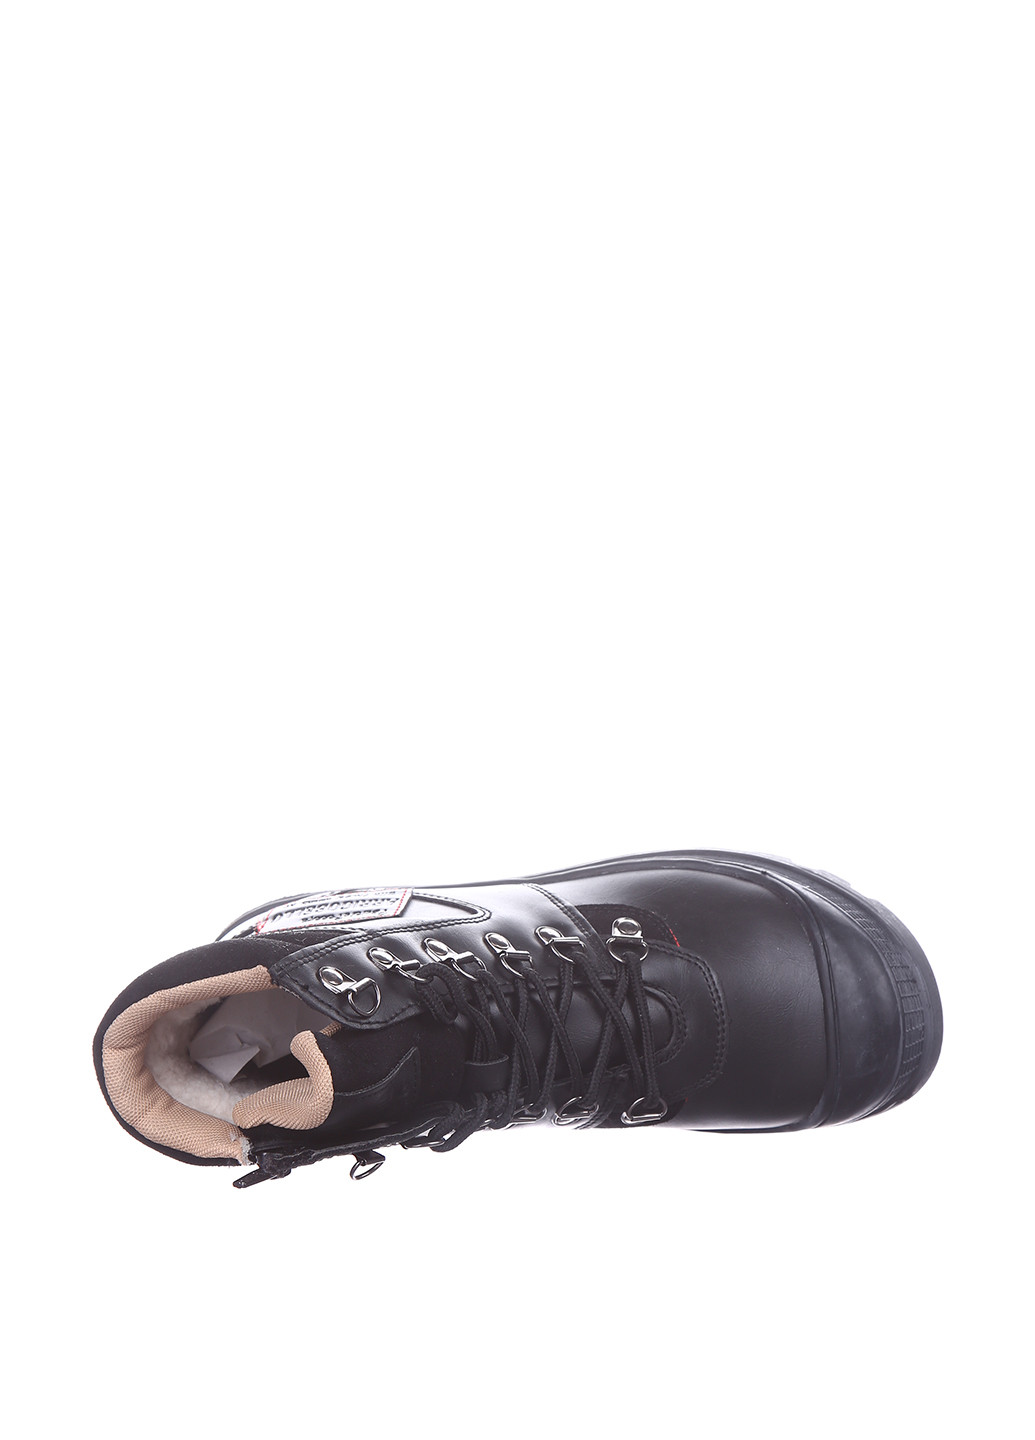 Осенние ботинки Arrigo Bello из искусственной кожи